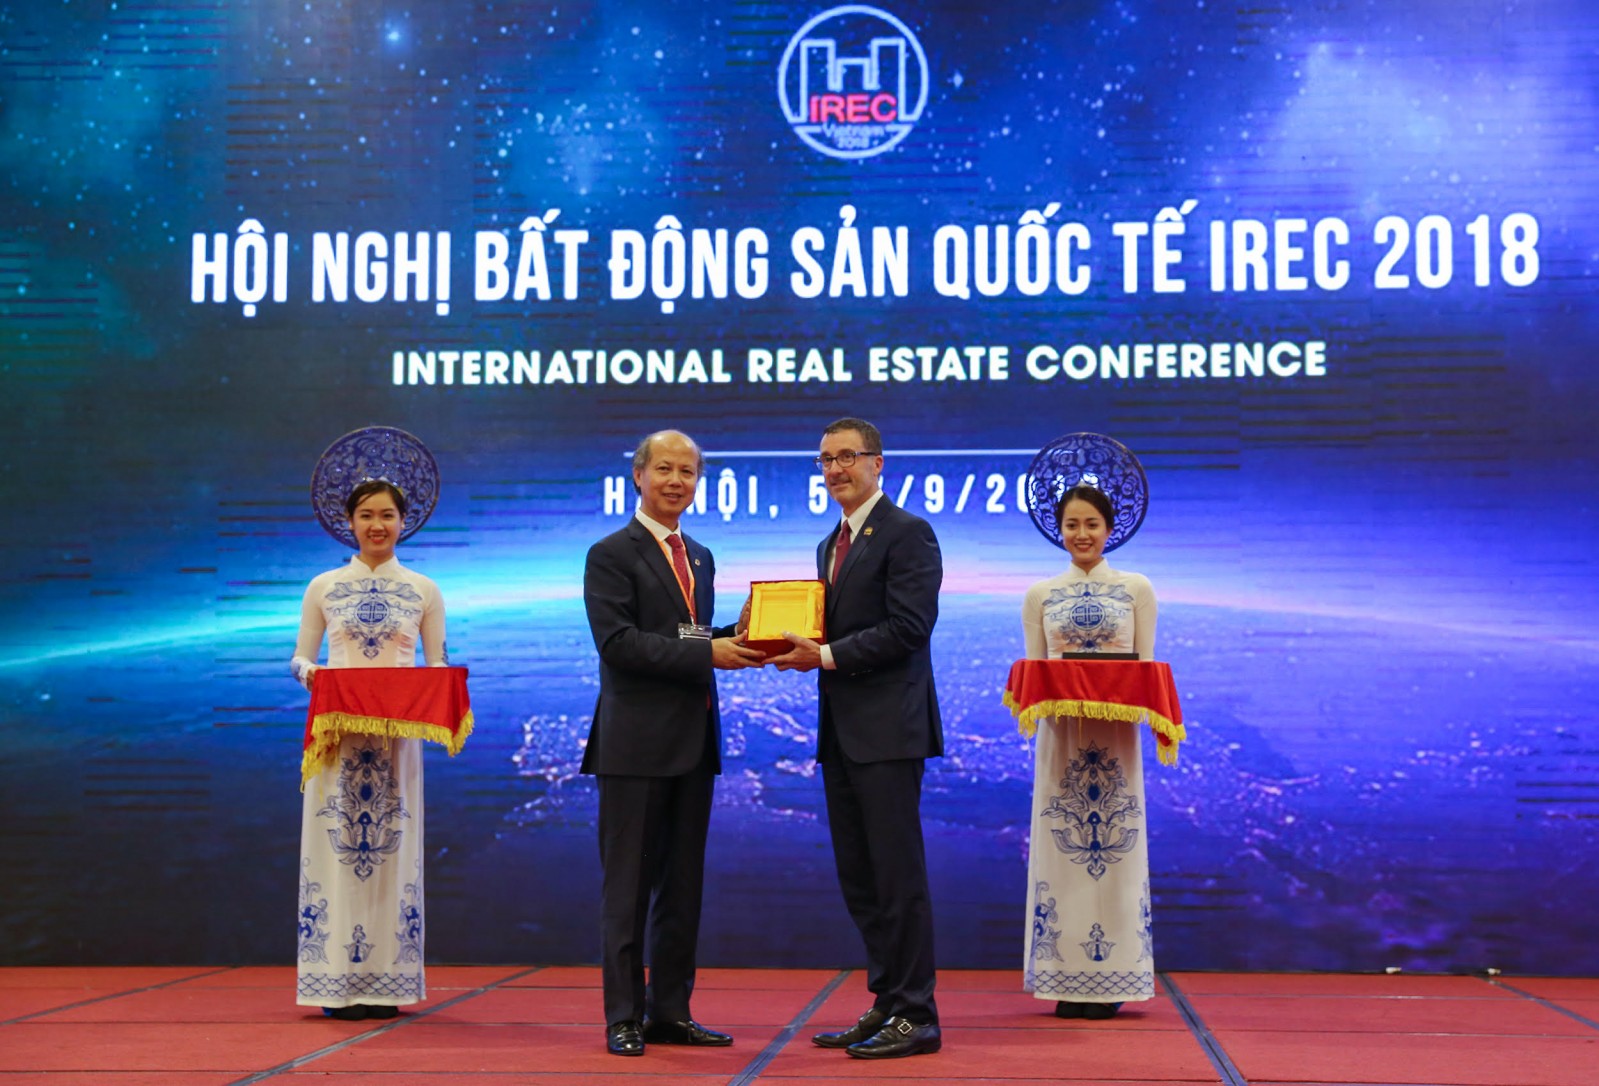 Đại diện Hiệp hội Bất động sản Việt Nam - ông Nguyễn Trần Nam và đại diện NAR - ông Vince Malta trao đổi quà lưu niệm.